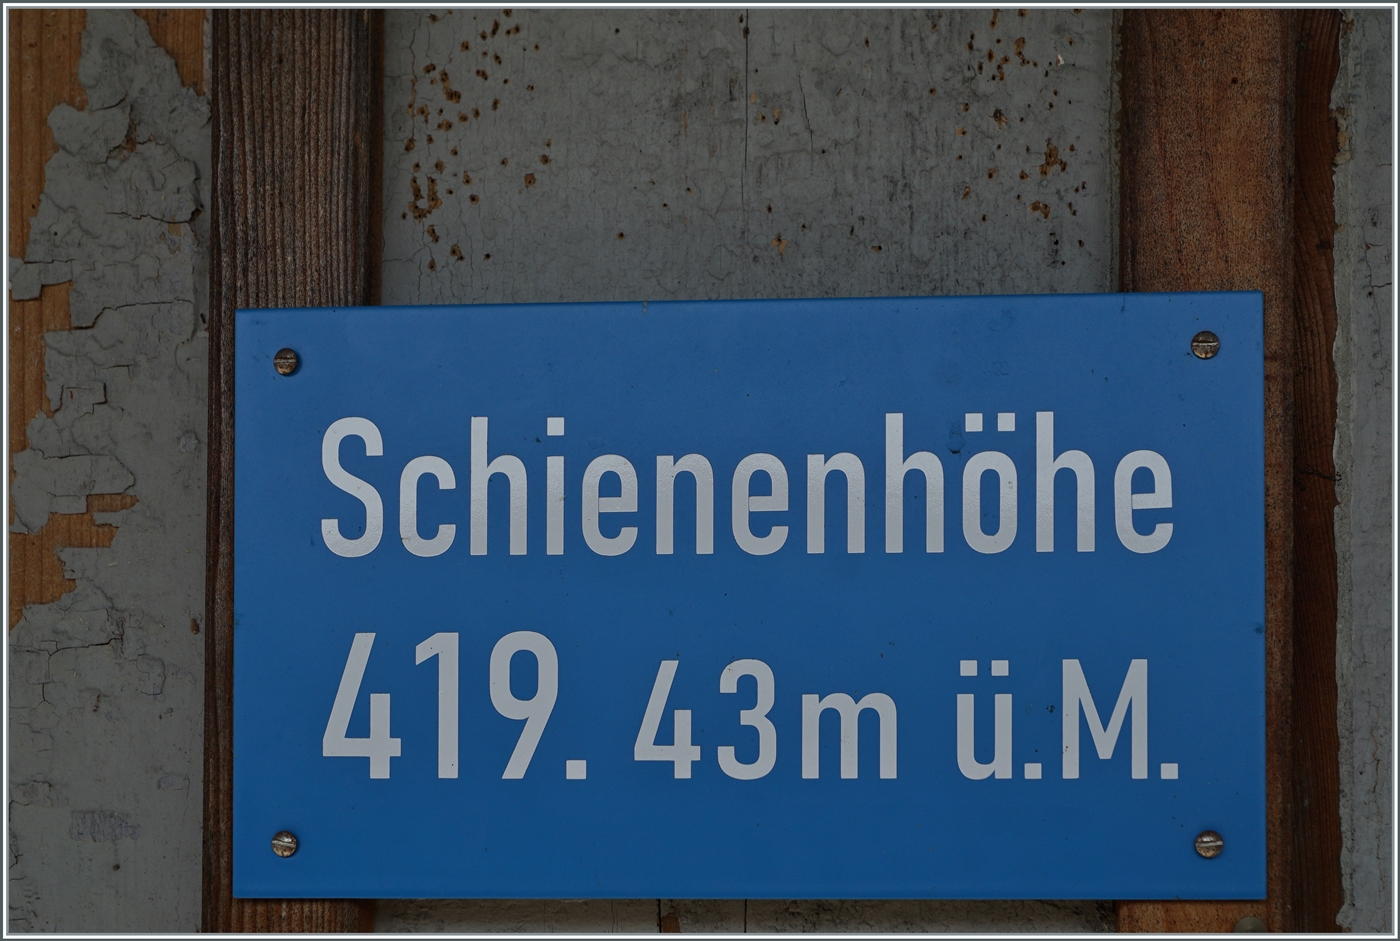 Bahnhof Ramsen, Schienenhöhe 419,43m ü.M. - Doch der Bahnhof an der Strecke Etwilen - Singen bietet weit mehr als Statistik...

18. Juni 2023